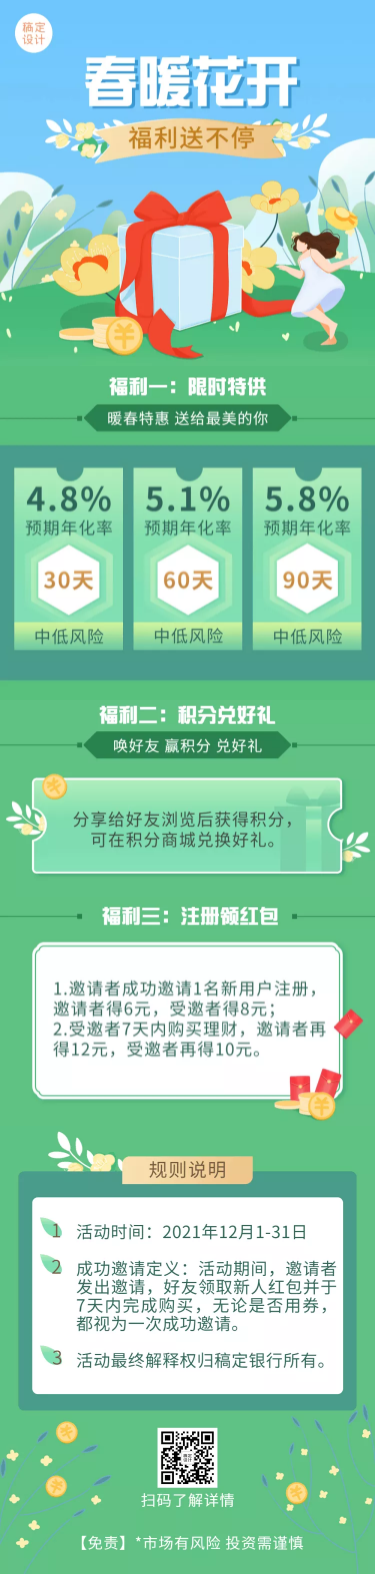 金融保险银行春季活动营销福利插画文章长图